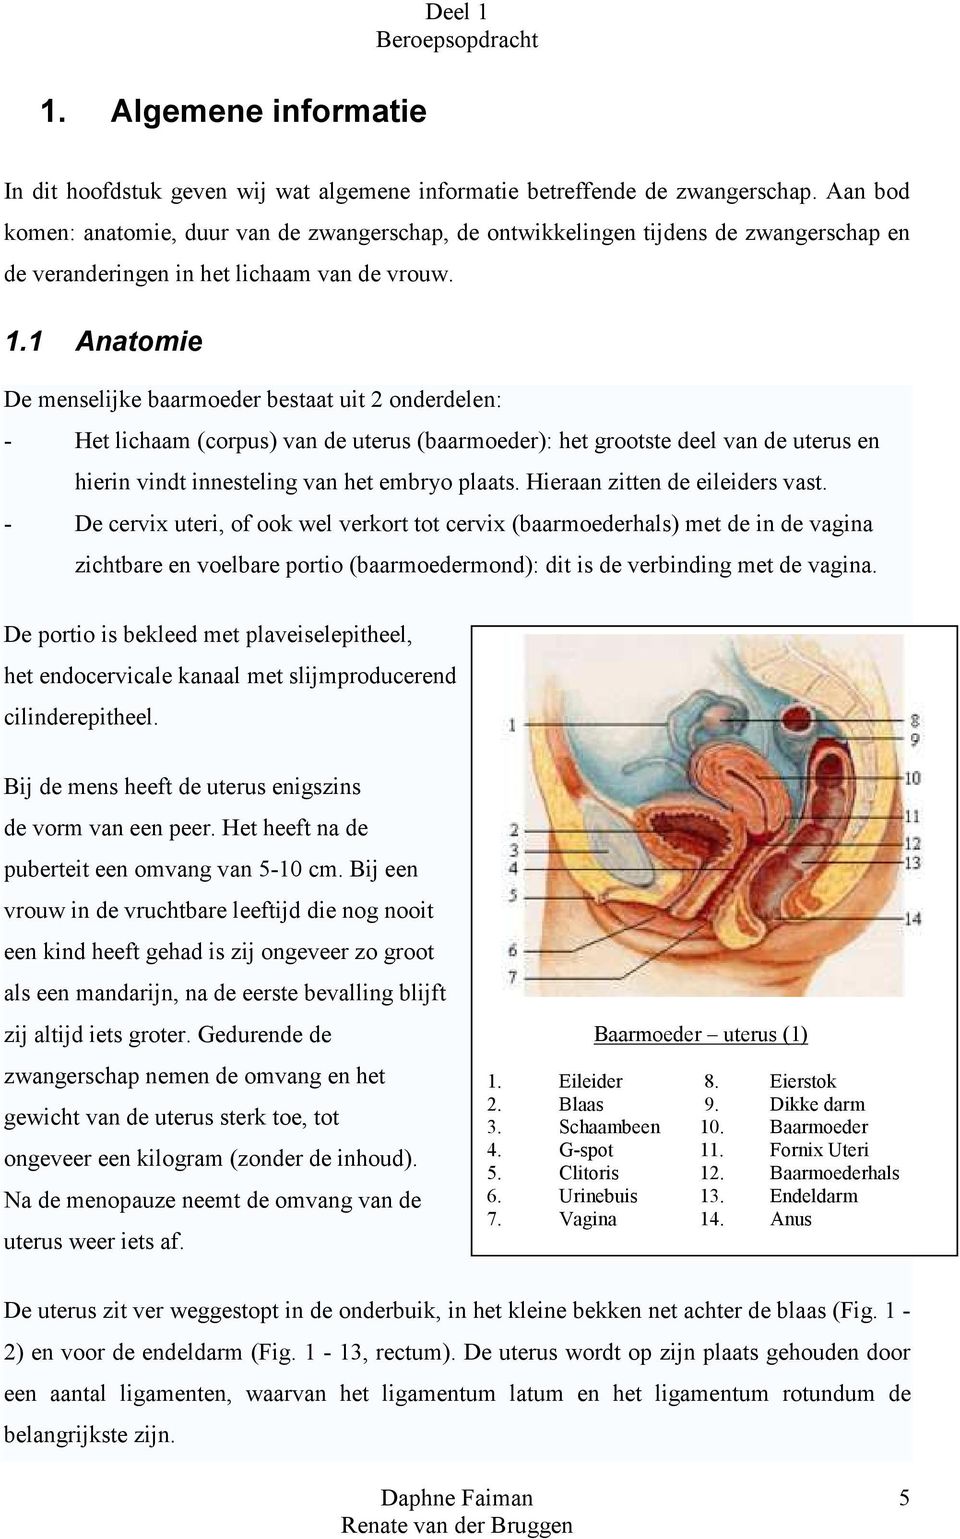 1 Anatomie De menselijke baarmoeder bestaat uit 2 onderdelen: - Het lichaam (corpus) van de uterus (baarmoeder): het grootste deel van de uterus en hierin vindt innesteling van het embryo plaats.